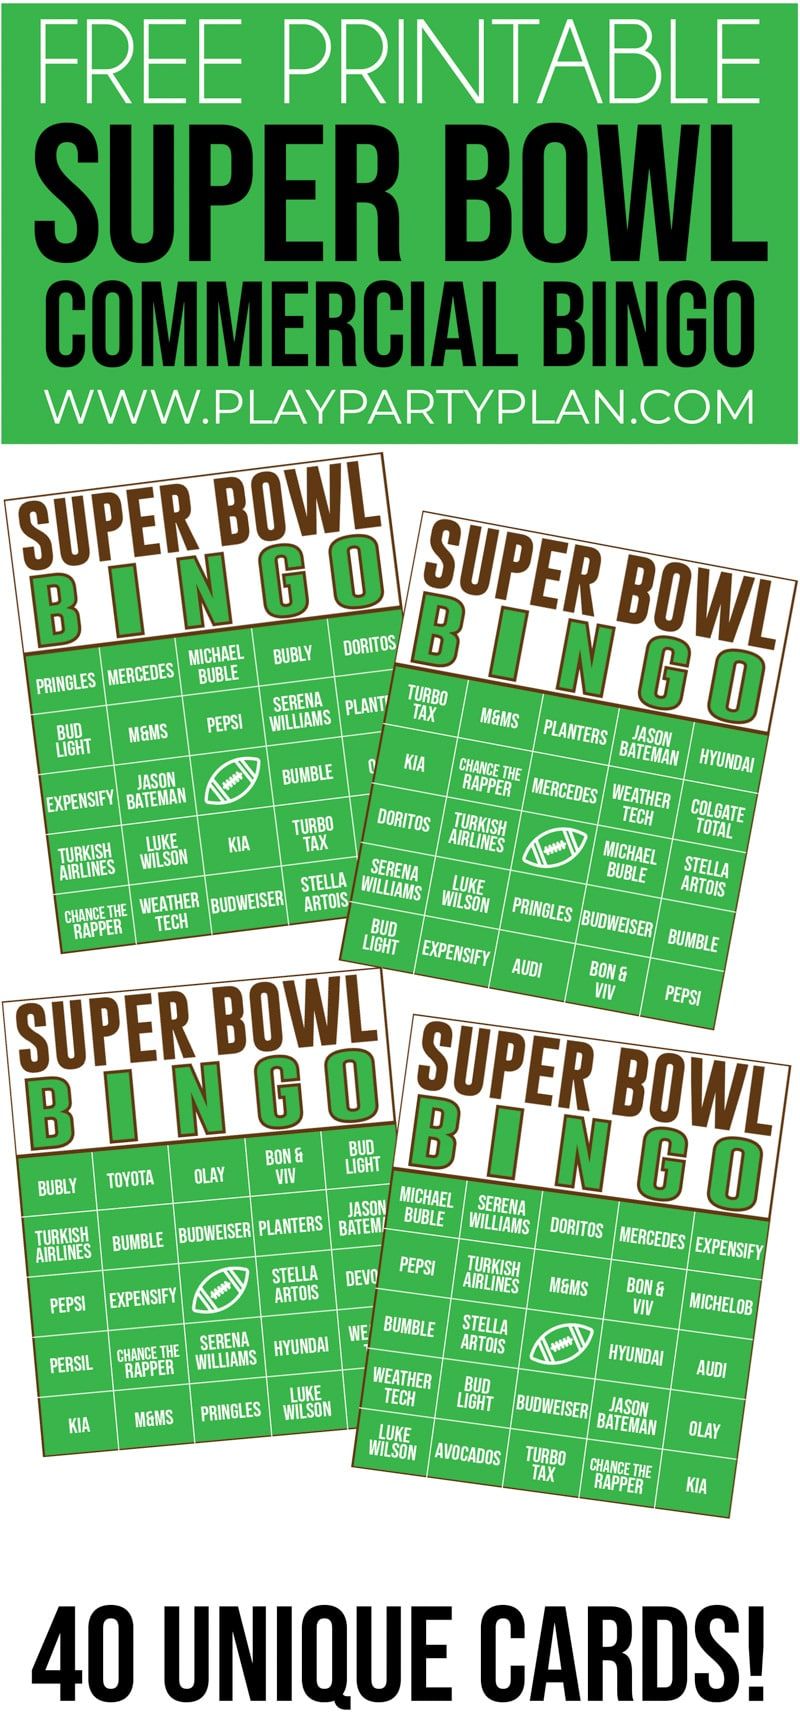 Это коммерческое бинго Super Bowl - одна из лучших игр для вечеринок Super Bowl! Идеально подходит для детей и взрослых!